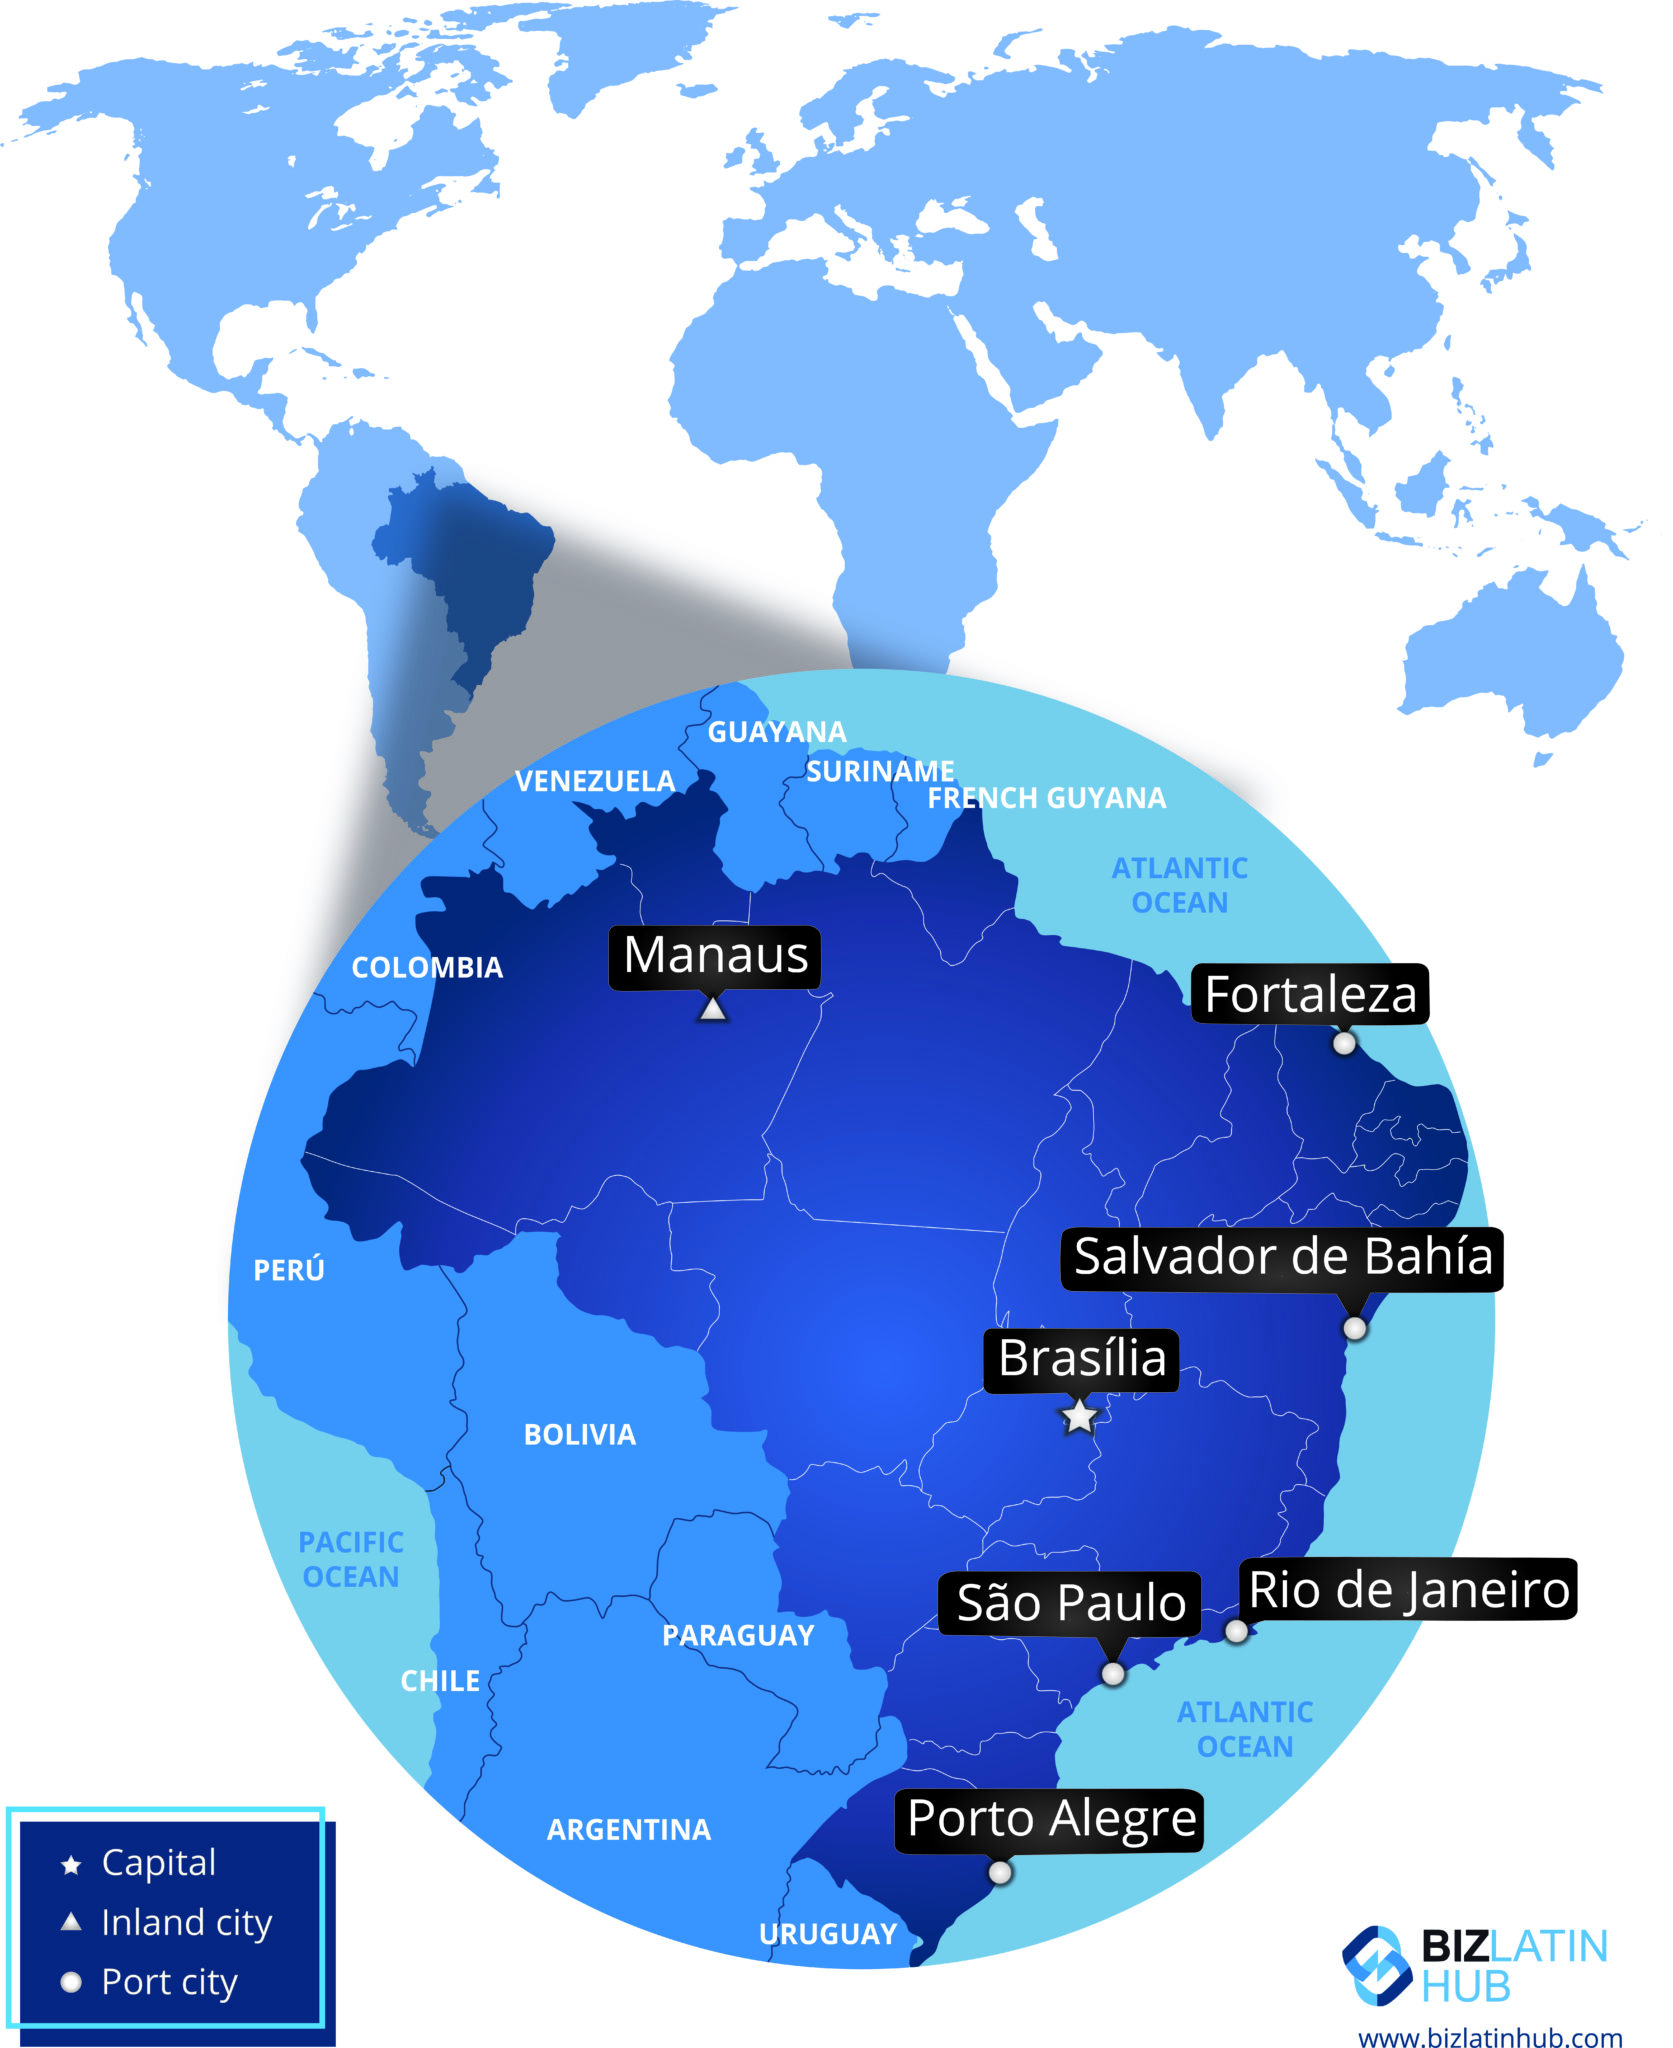 Mapa do Brasil e de suas principais cidades, muito útil para investidores que pretendem abrir um negócio no Brasil.